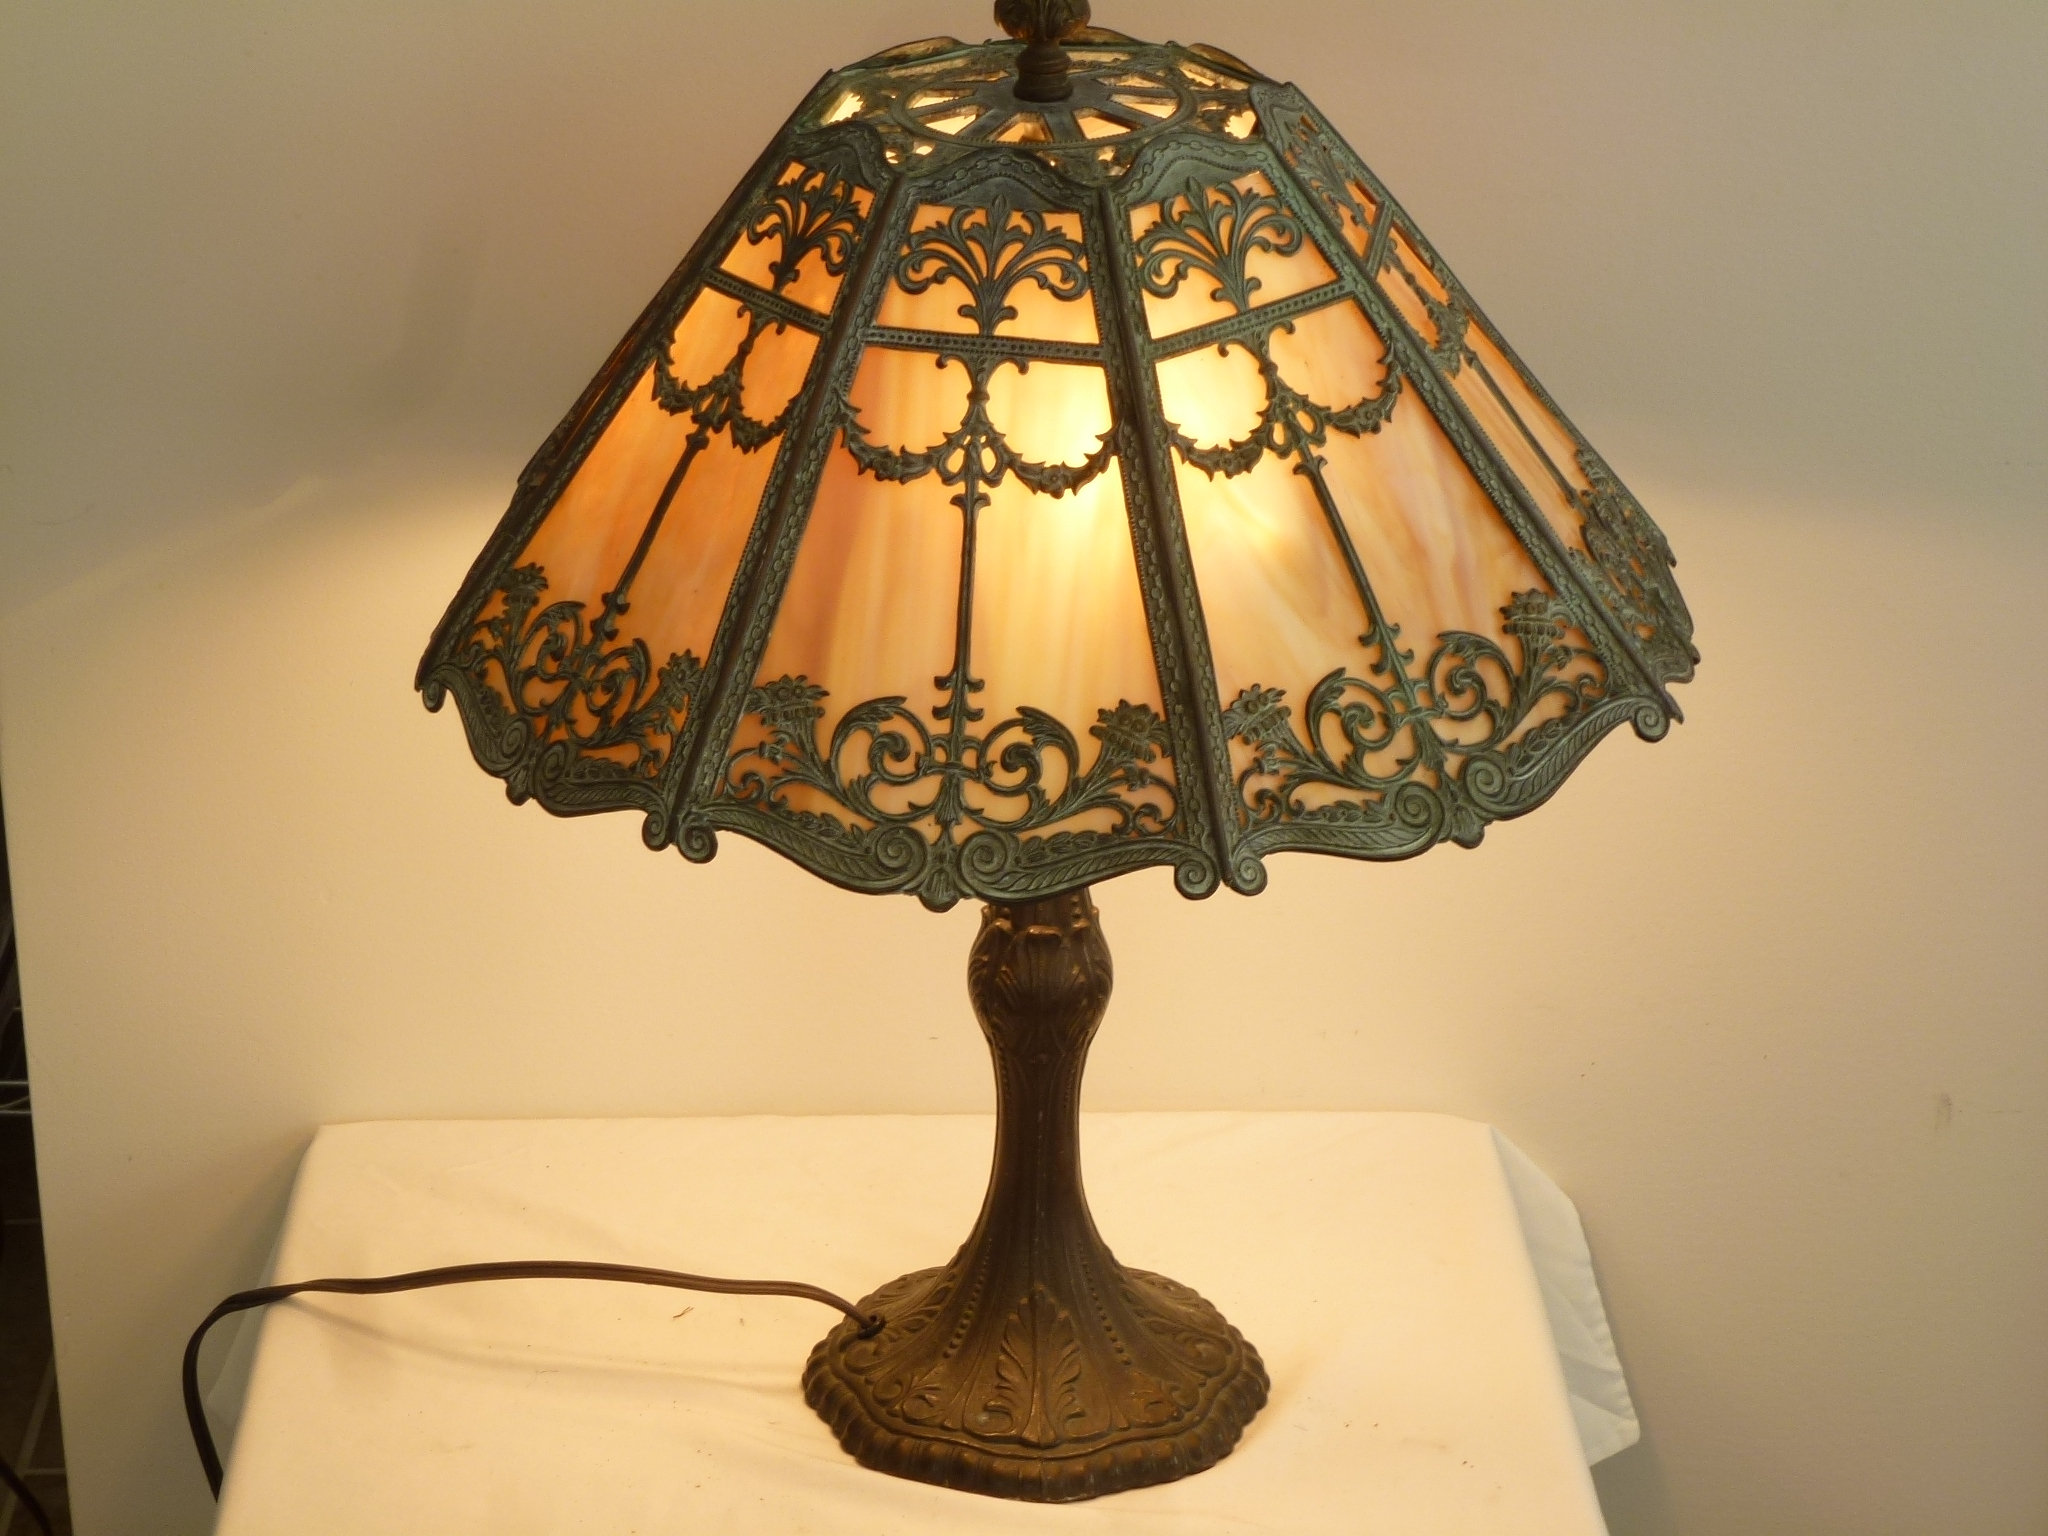 Early 1900's slag glass lamp - Etsy 日本